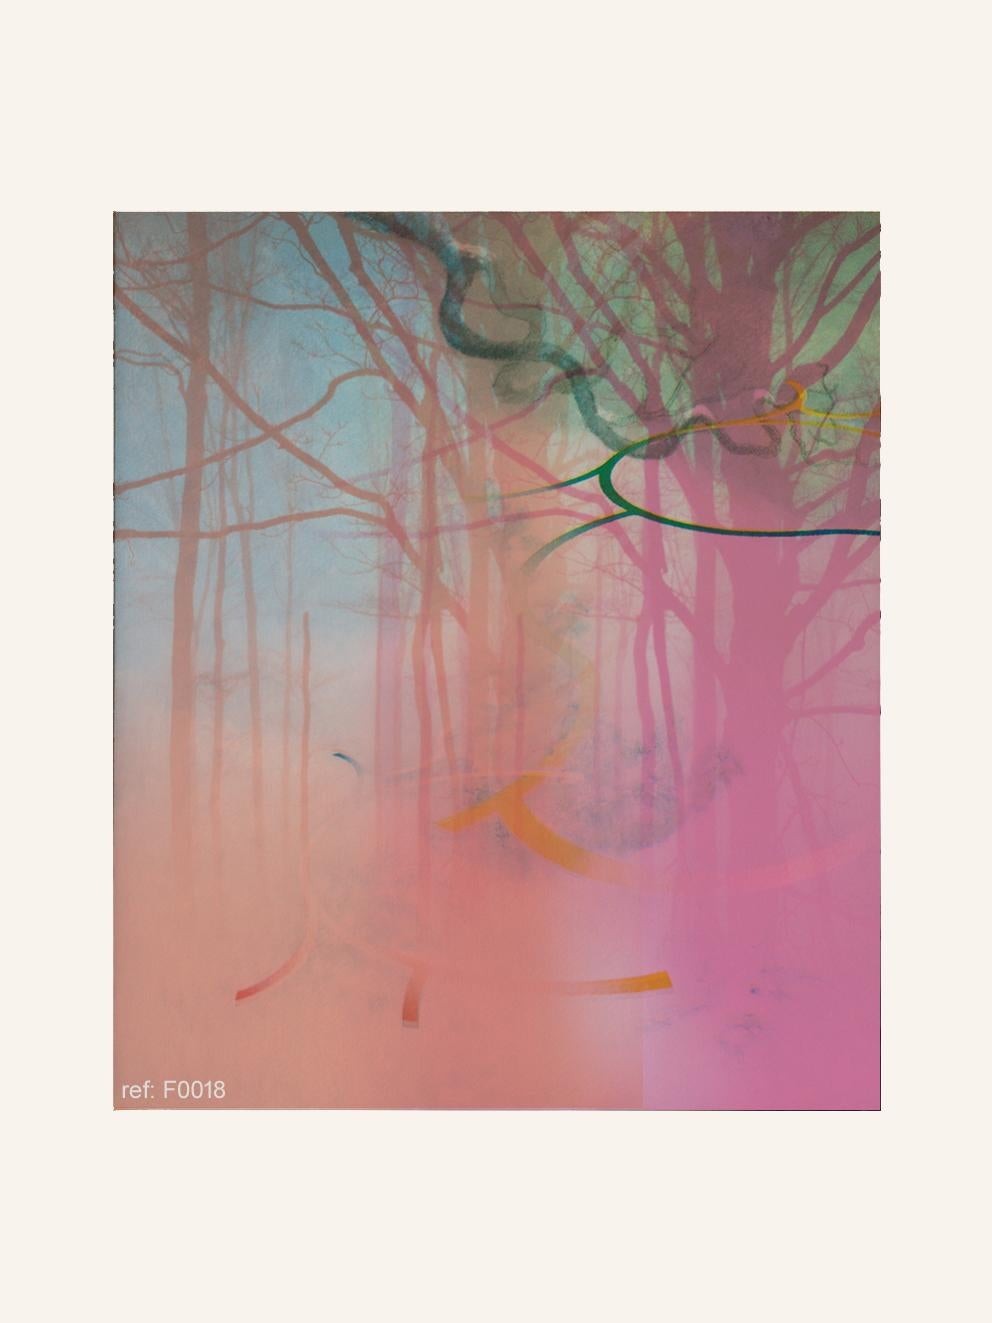 Landscape Print Francisco Nicolás - Forest rose - Contemporain, abstrait, moderne, Pop art, surréaliste, paysage